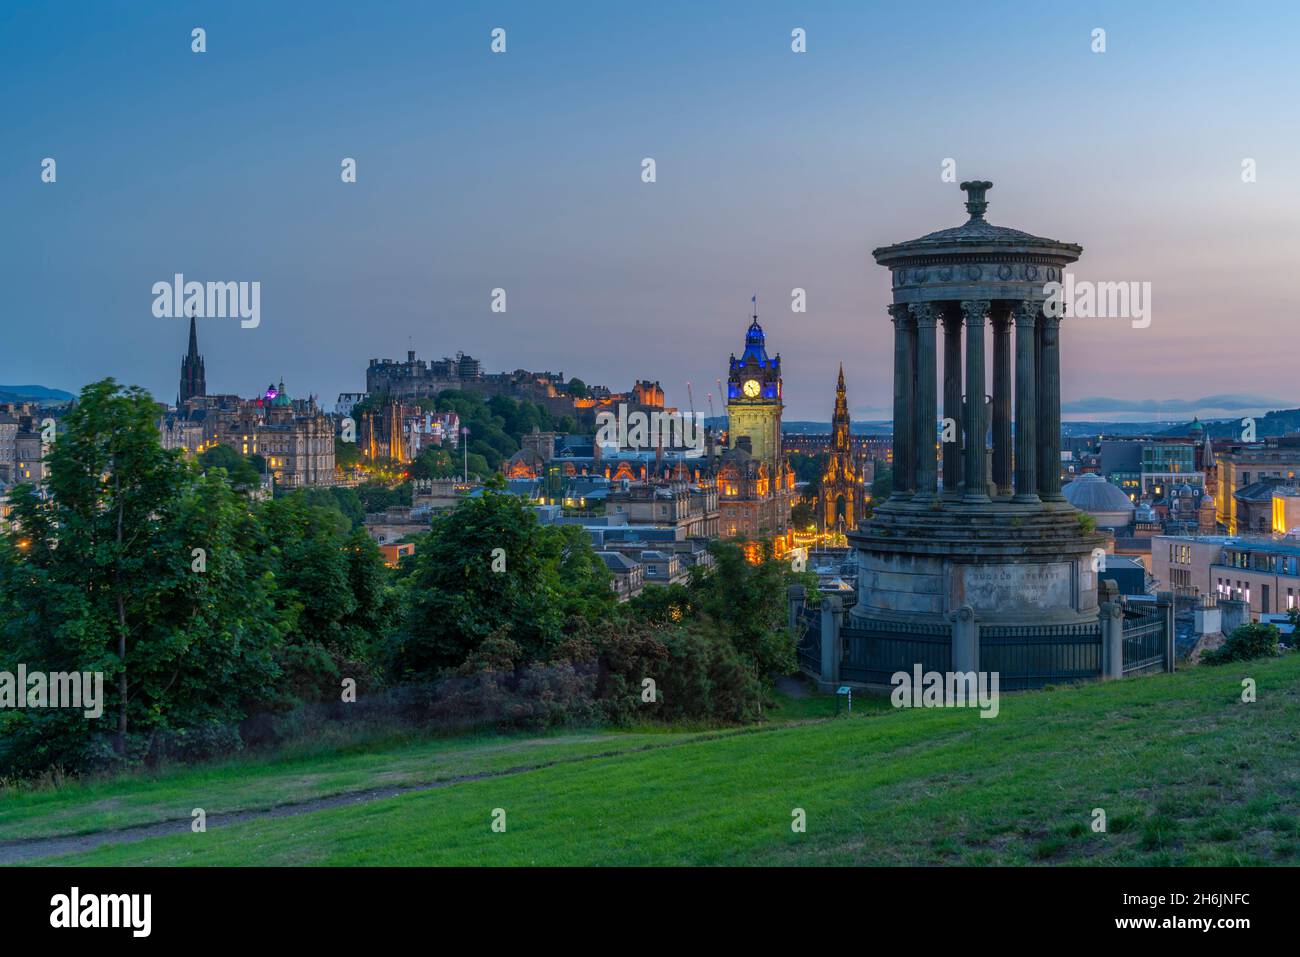 Vista del Castillo de Edimburgo, el Hotel Balmoral y el monumento Dugald Stewart desde Calton Hill al atardecer, EE.UU., Edimburgo, Lothian, Escocia Foto de stock